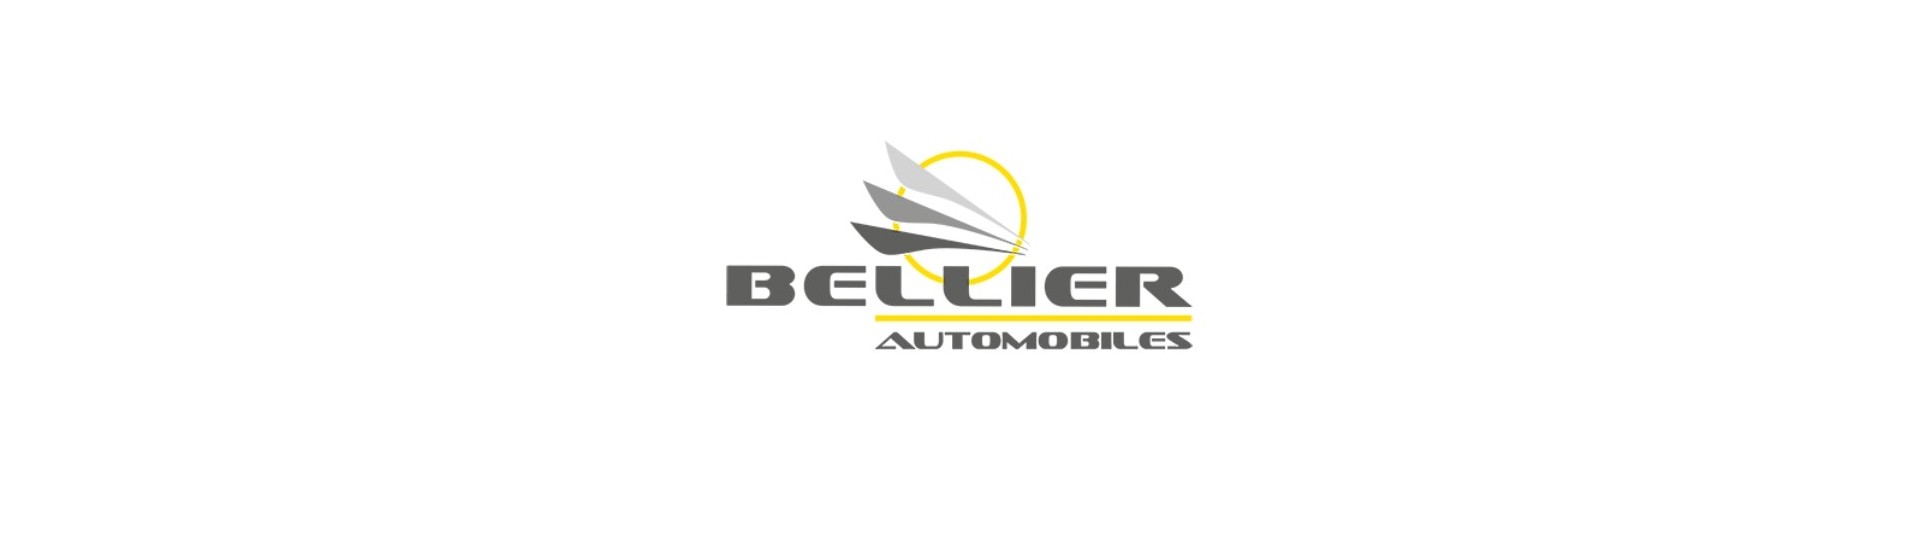 Cable de inversión al mejor precio para coche sin permiso Bellier